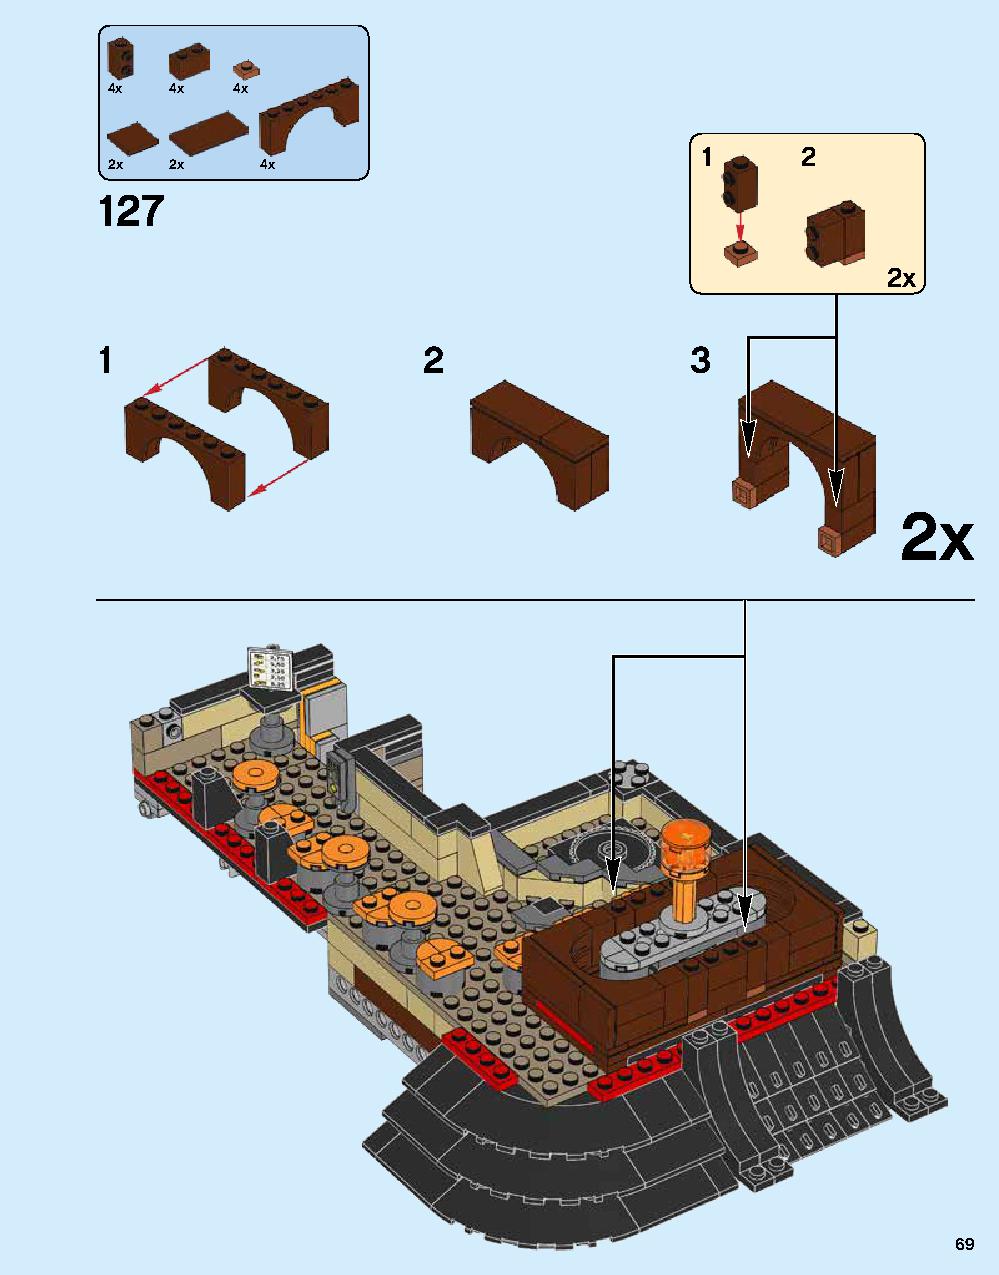 ニンジャゴー シティ 70620 レゴの商品情報 レゴの説明書・組立方法 69 page